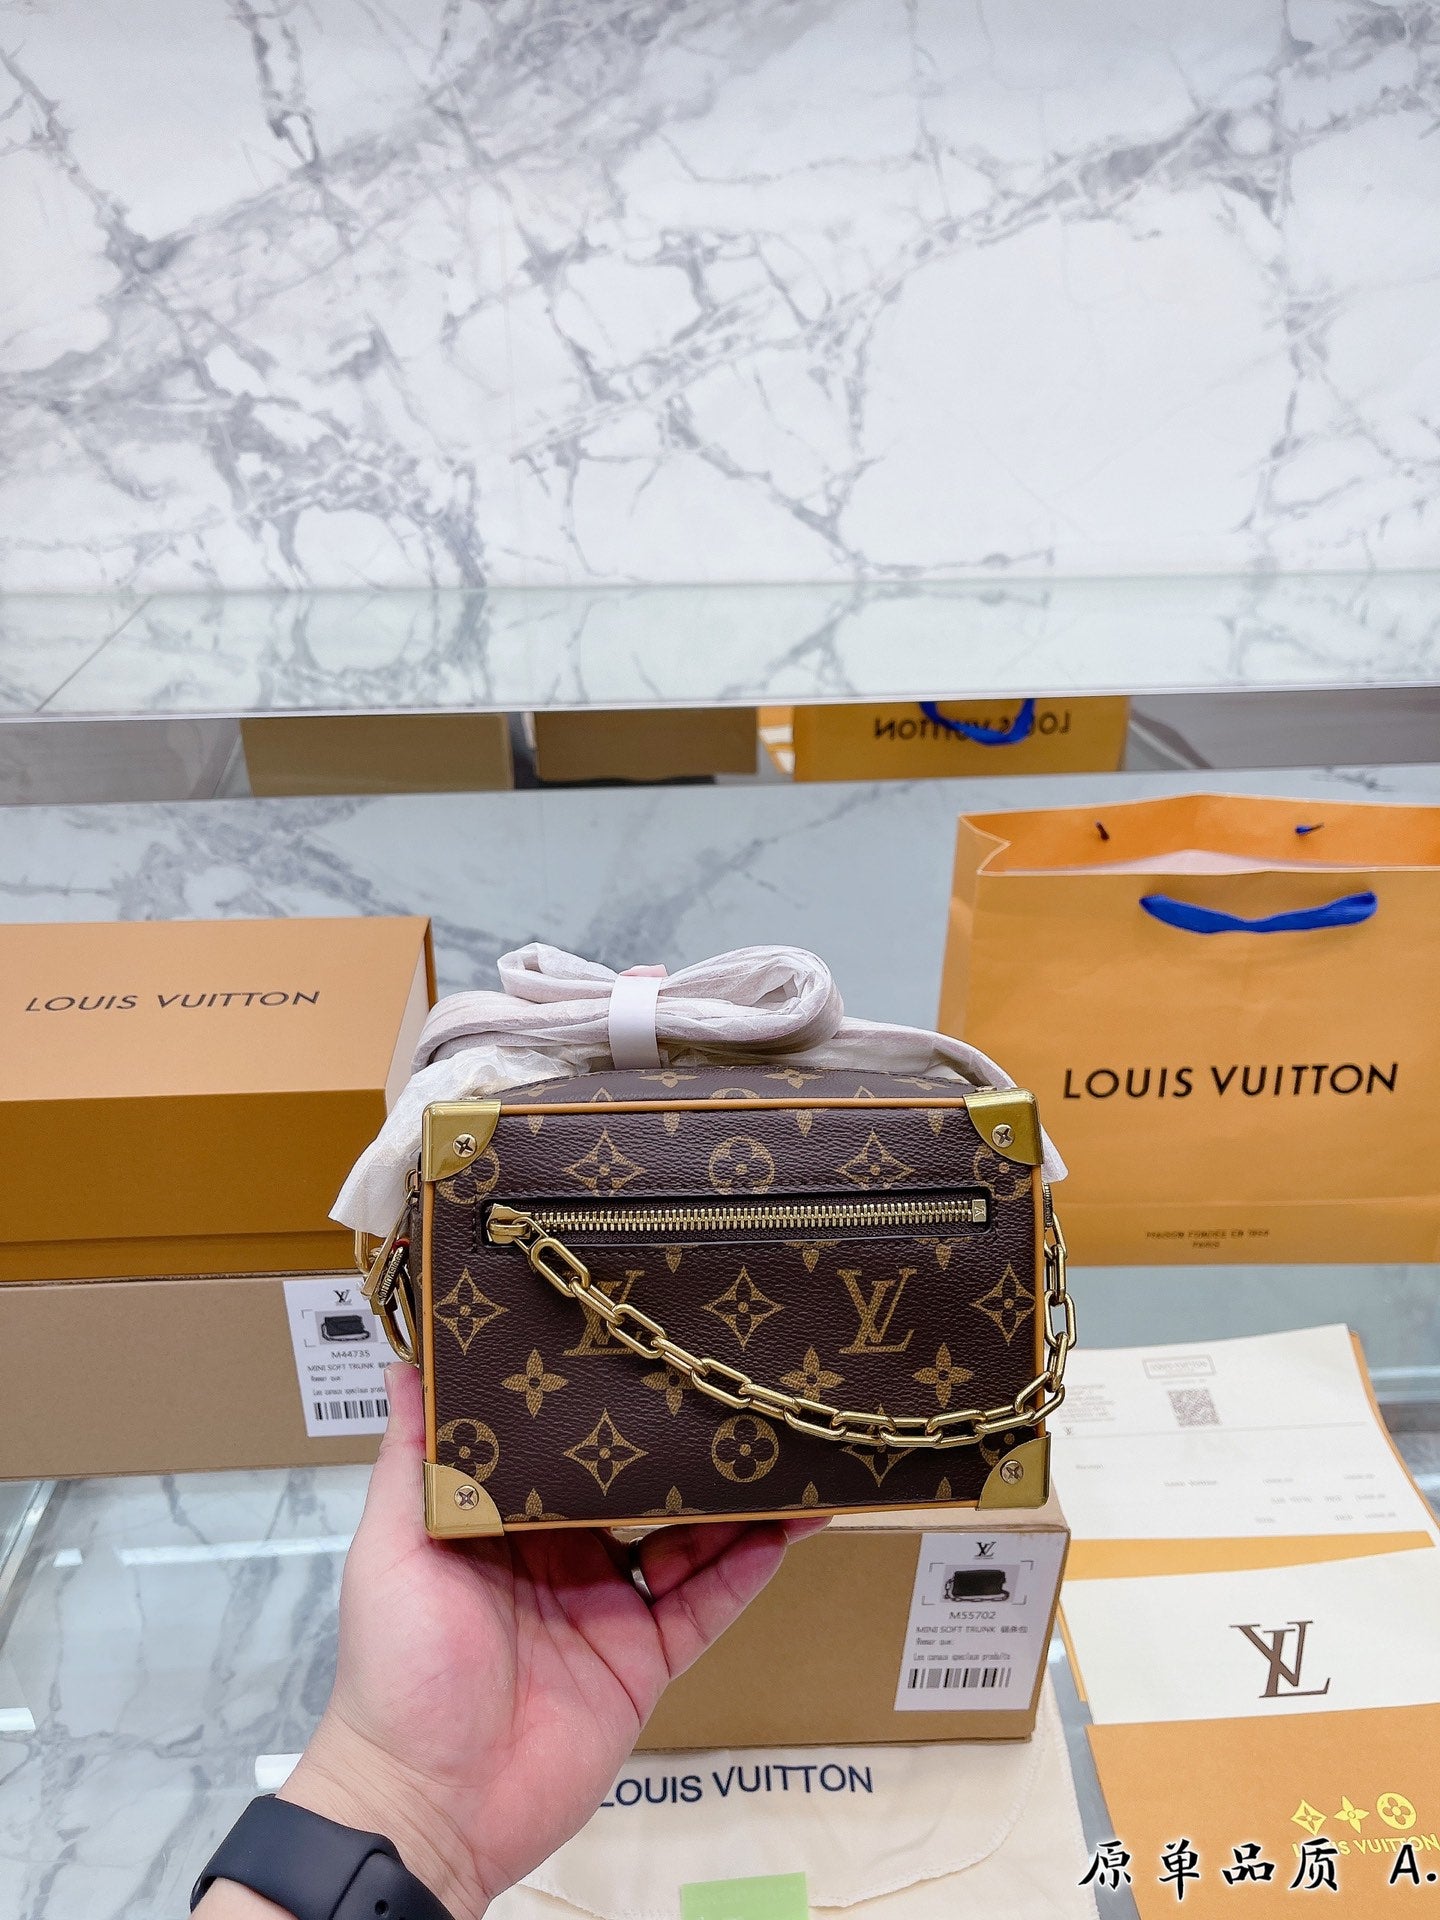 Louis Vuitton Soft Trunk Phone Box